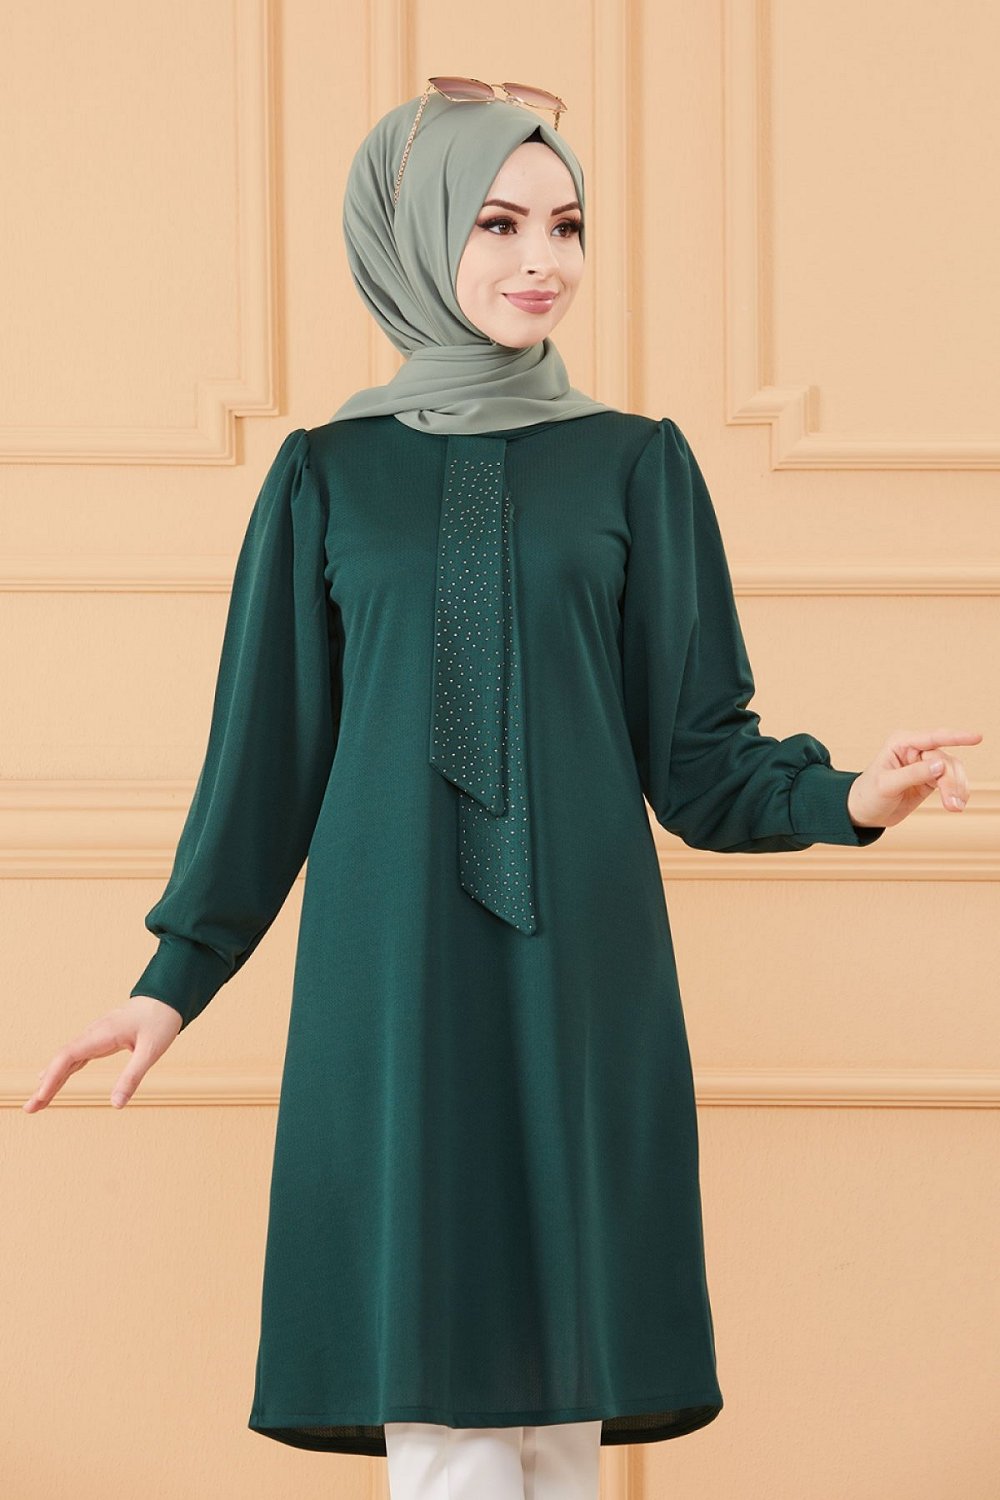 Tunique style habillé pour femme (Tenue hijab classique) - Couleur vert  émeraude - Prêt à porter et accessoires sur